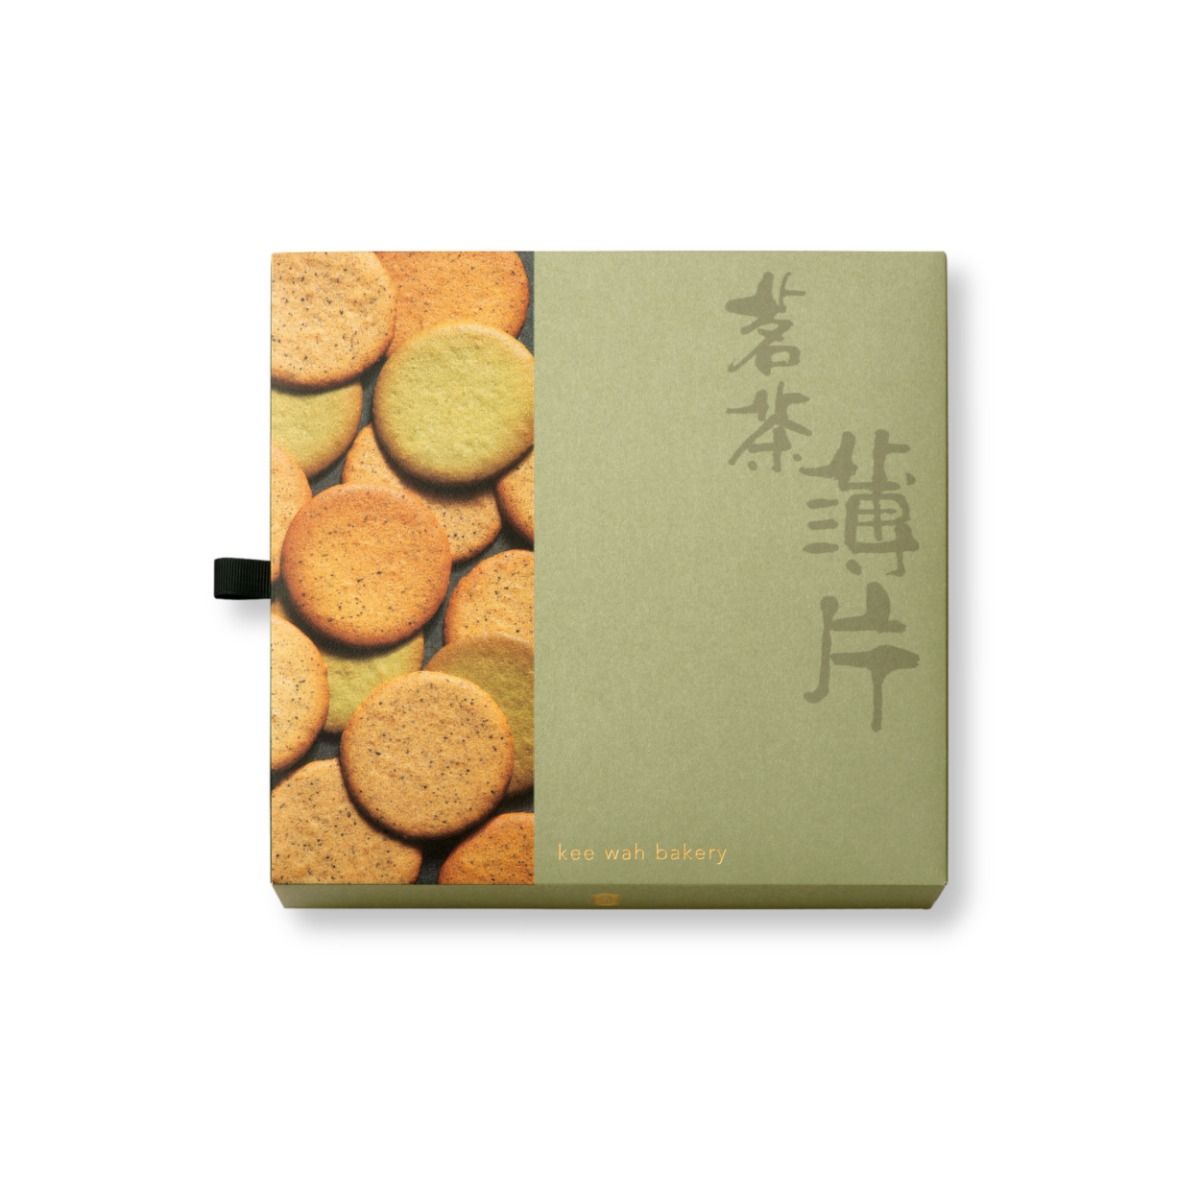 Kee Wah Gift – Assorted Tea Cookies 什錦茗茶薄片禮盒